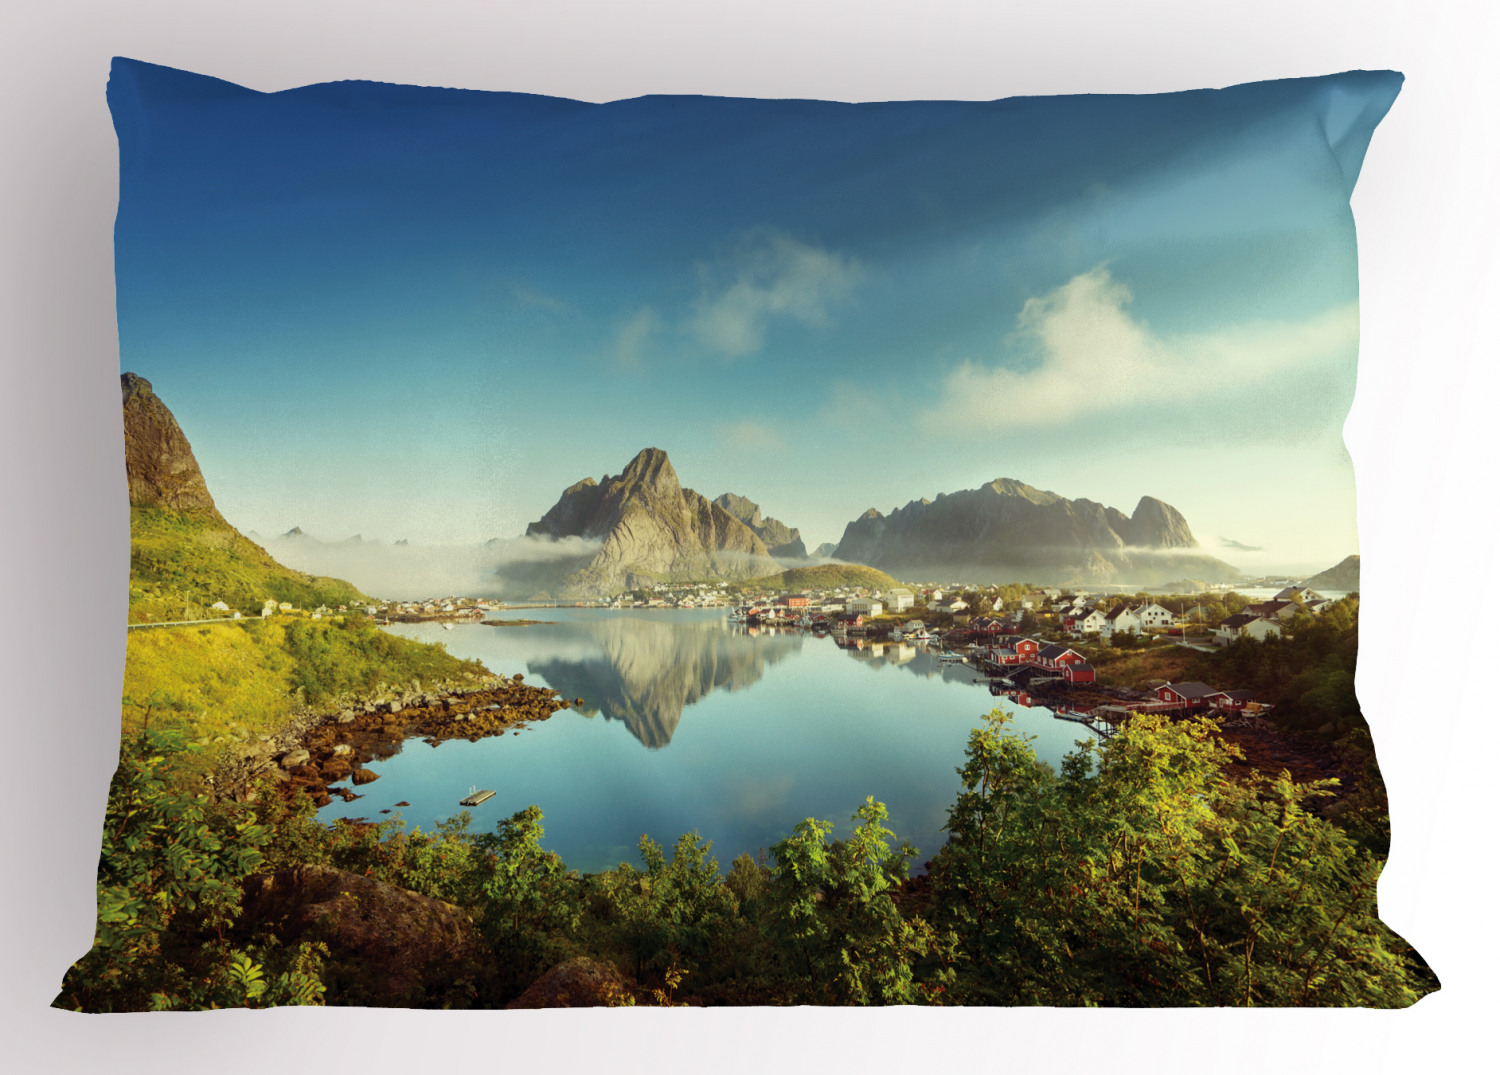 Details about   Alps Landscape Pillow Sham Decorative Pillowcase 3 Sizes Bedroom Decoration 